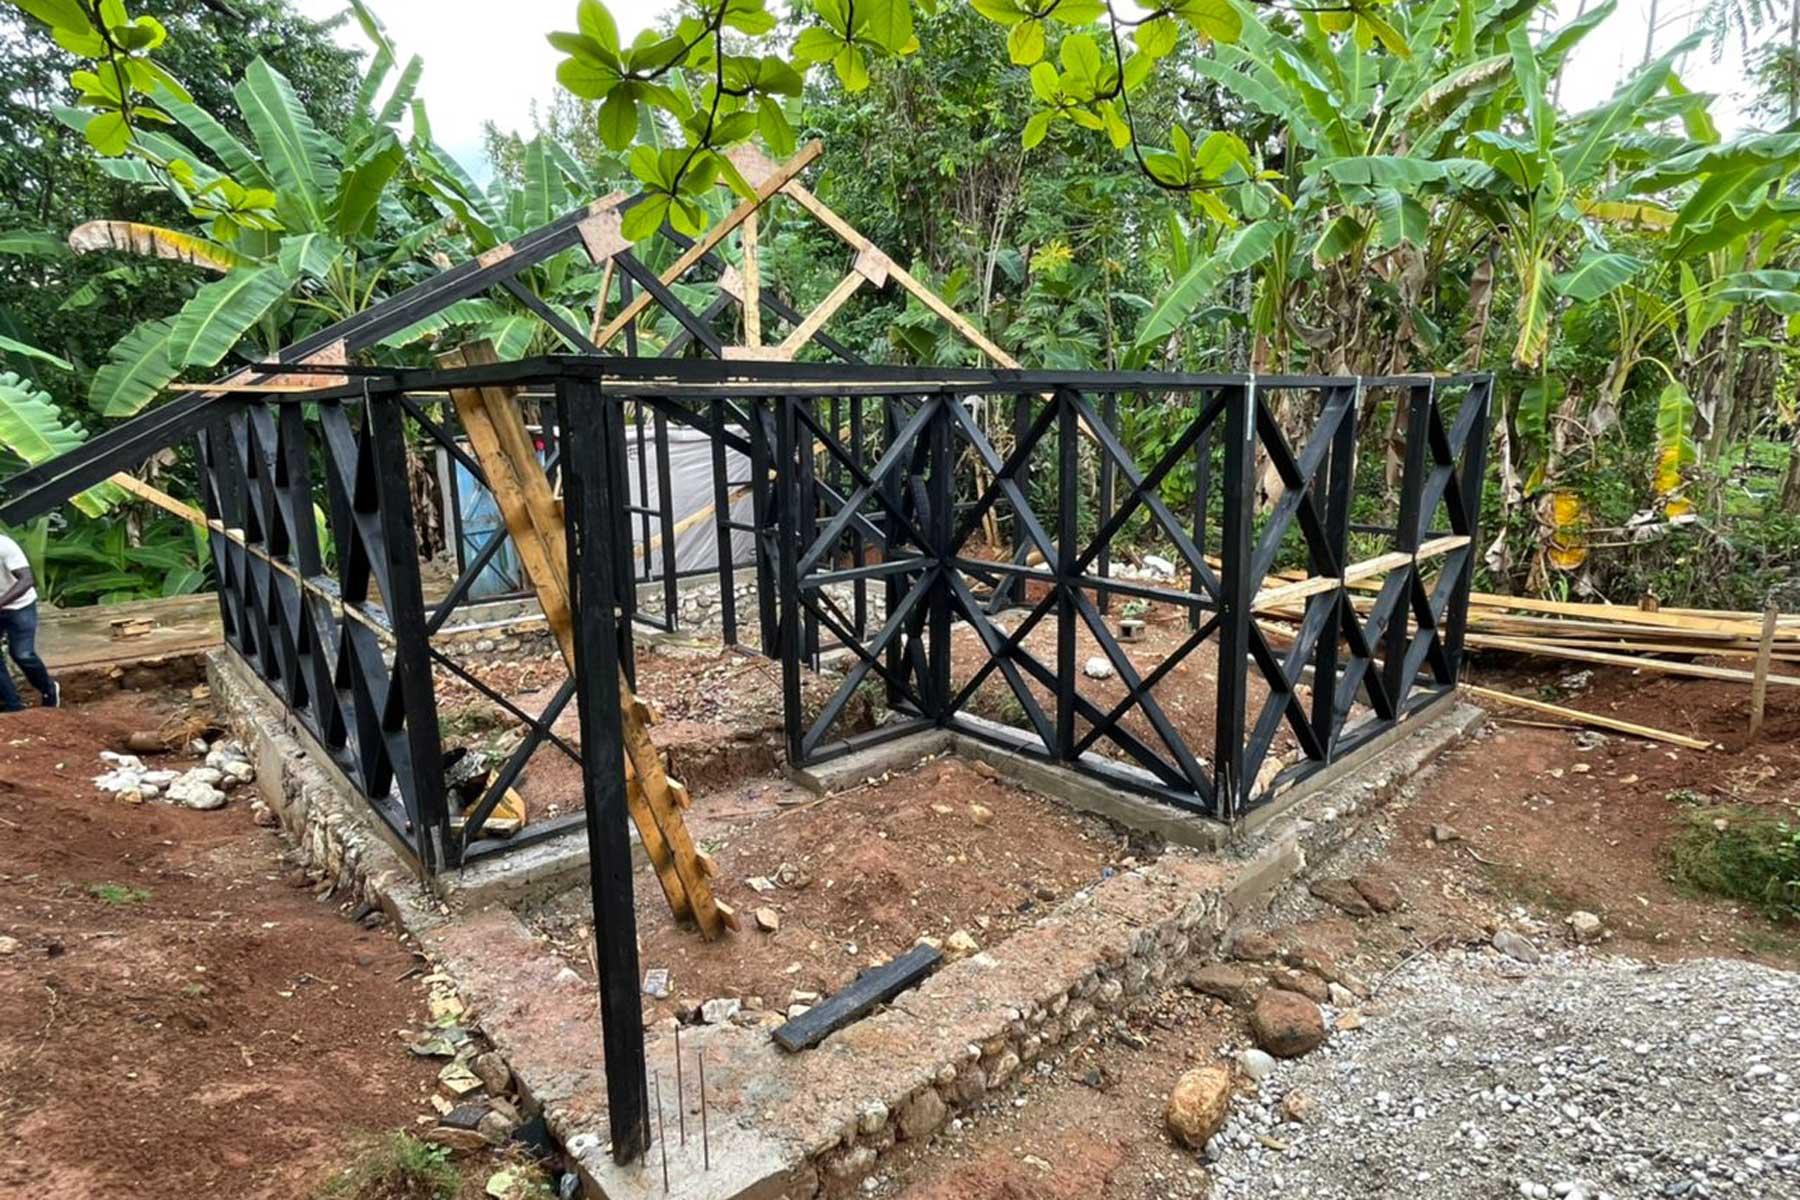 Der Bau von hurrikan- und erdbebensicheren Häusern gehört zu den langfristigen Wiederaufbauprojekten von LWB Haiti, die die Bemühungen um Risikominderung im Katastrophenfall ergänzen. Foto: LWB Haiti